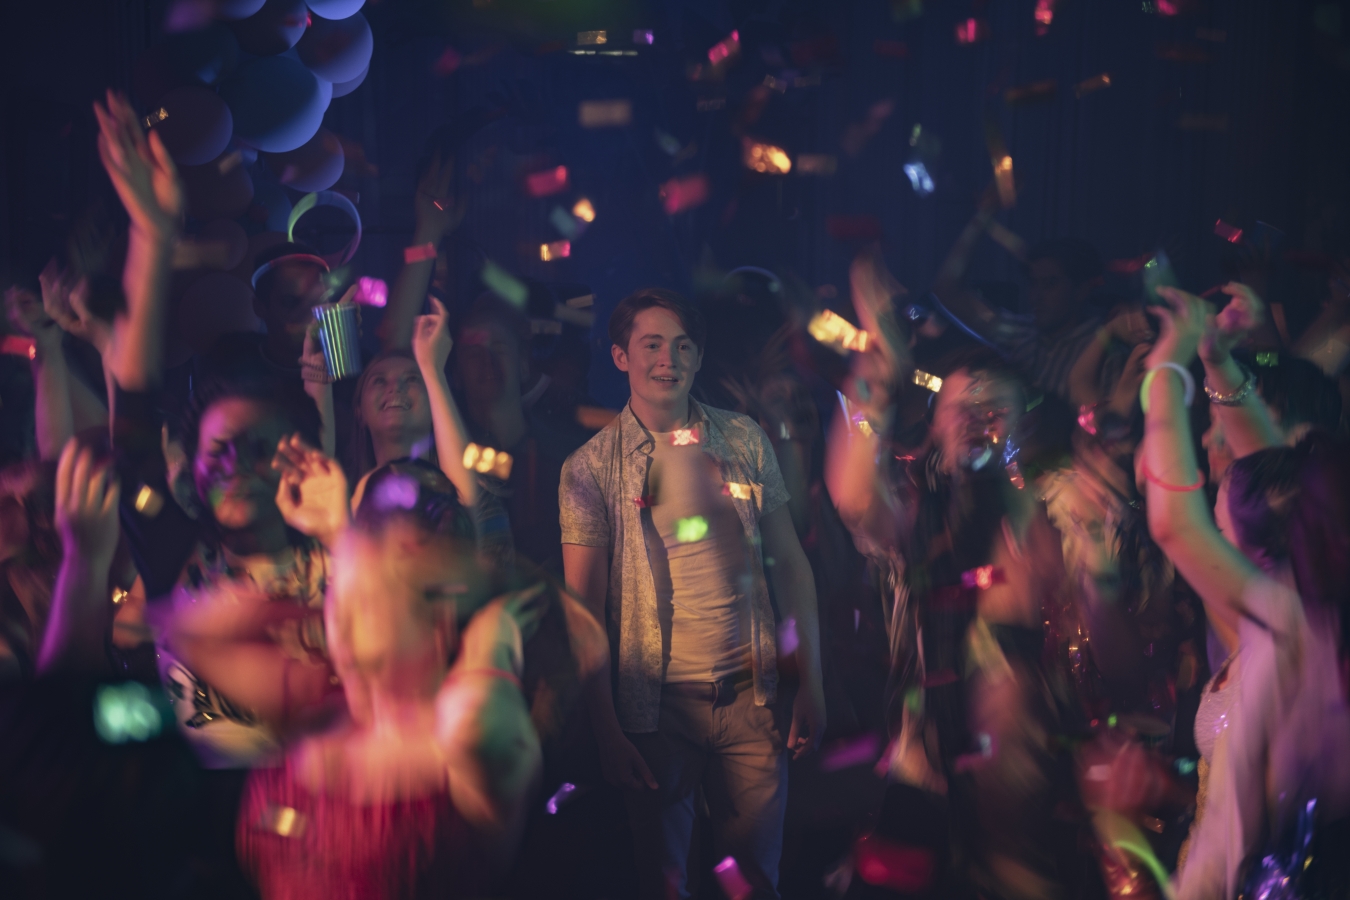 Nick steht auf einem Dancefloor und schaut lächelnd in die Runde, umringt von feiernden Menschen